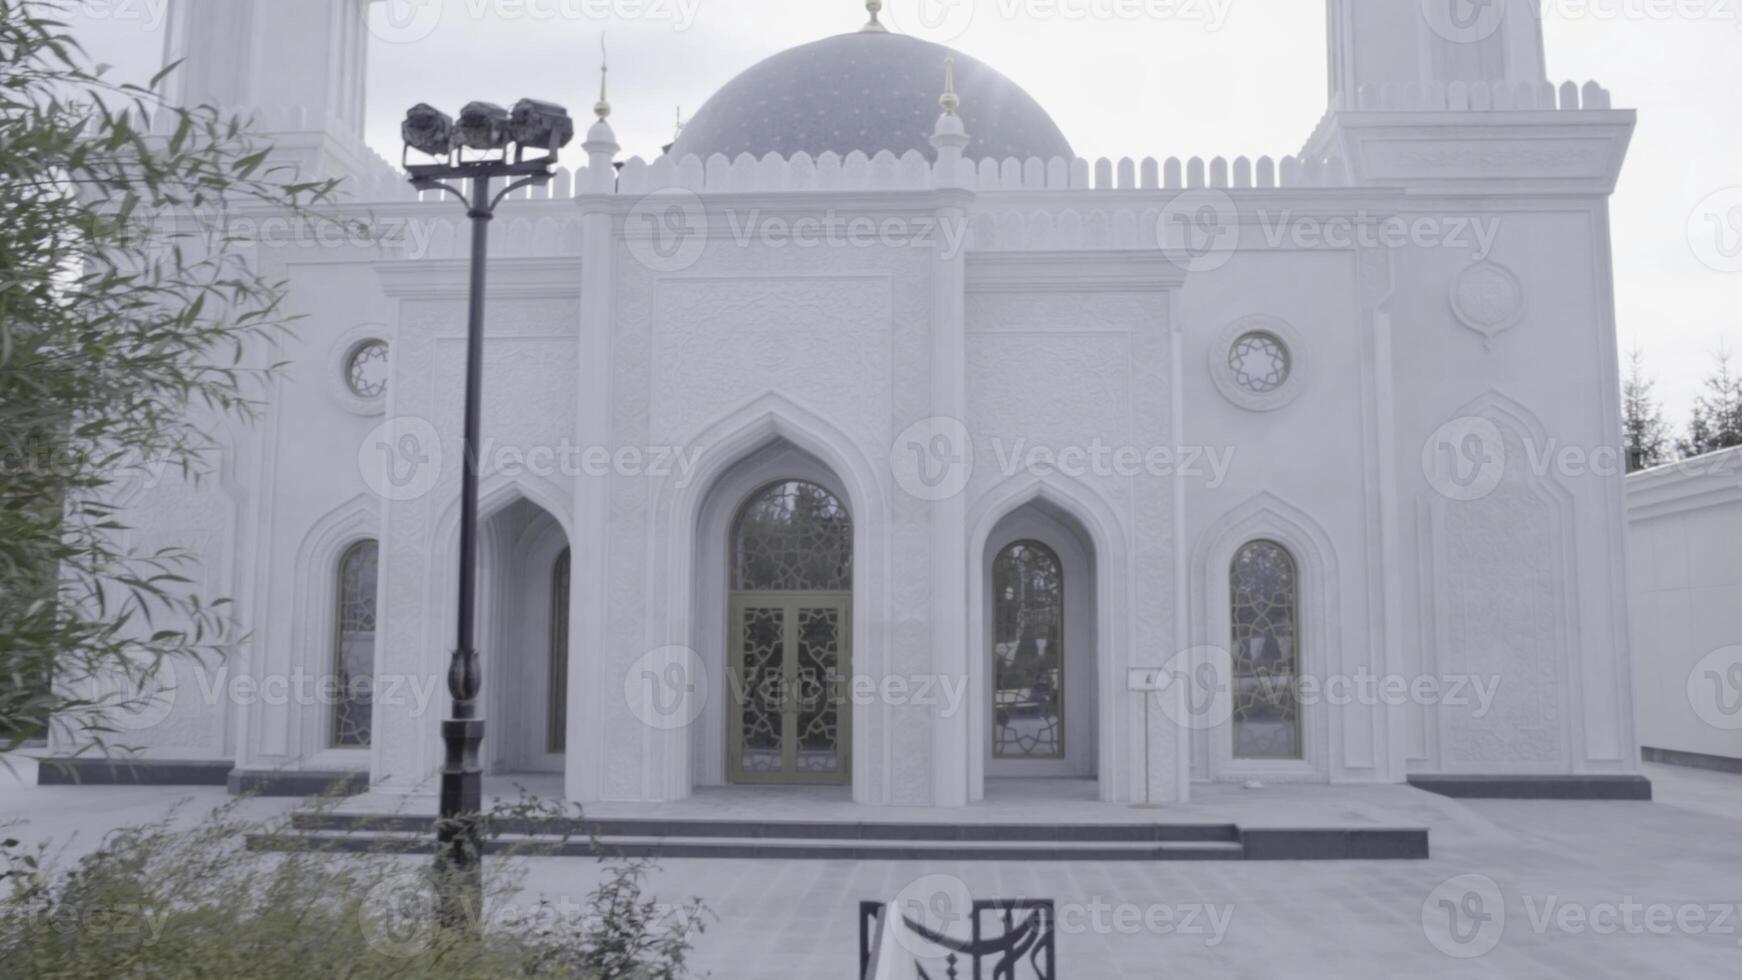 een wit en grijs historisch moskee achter bomen in de stad. tafereel. religieus gebouw met minaretten Aan bewolkt lucht achtergrond. foto